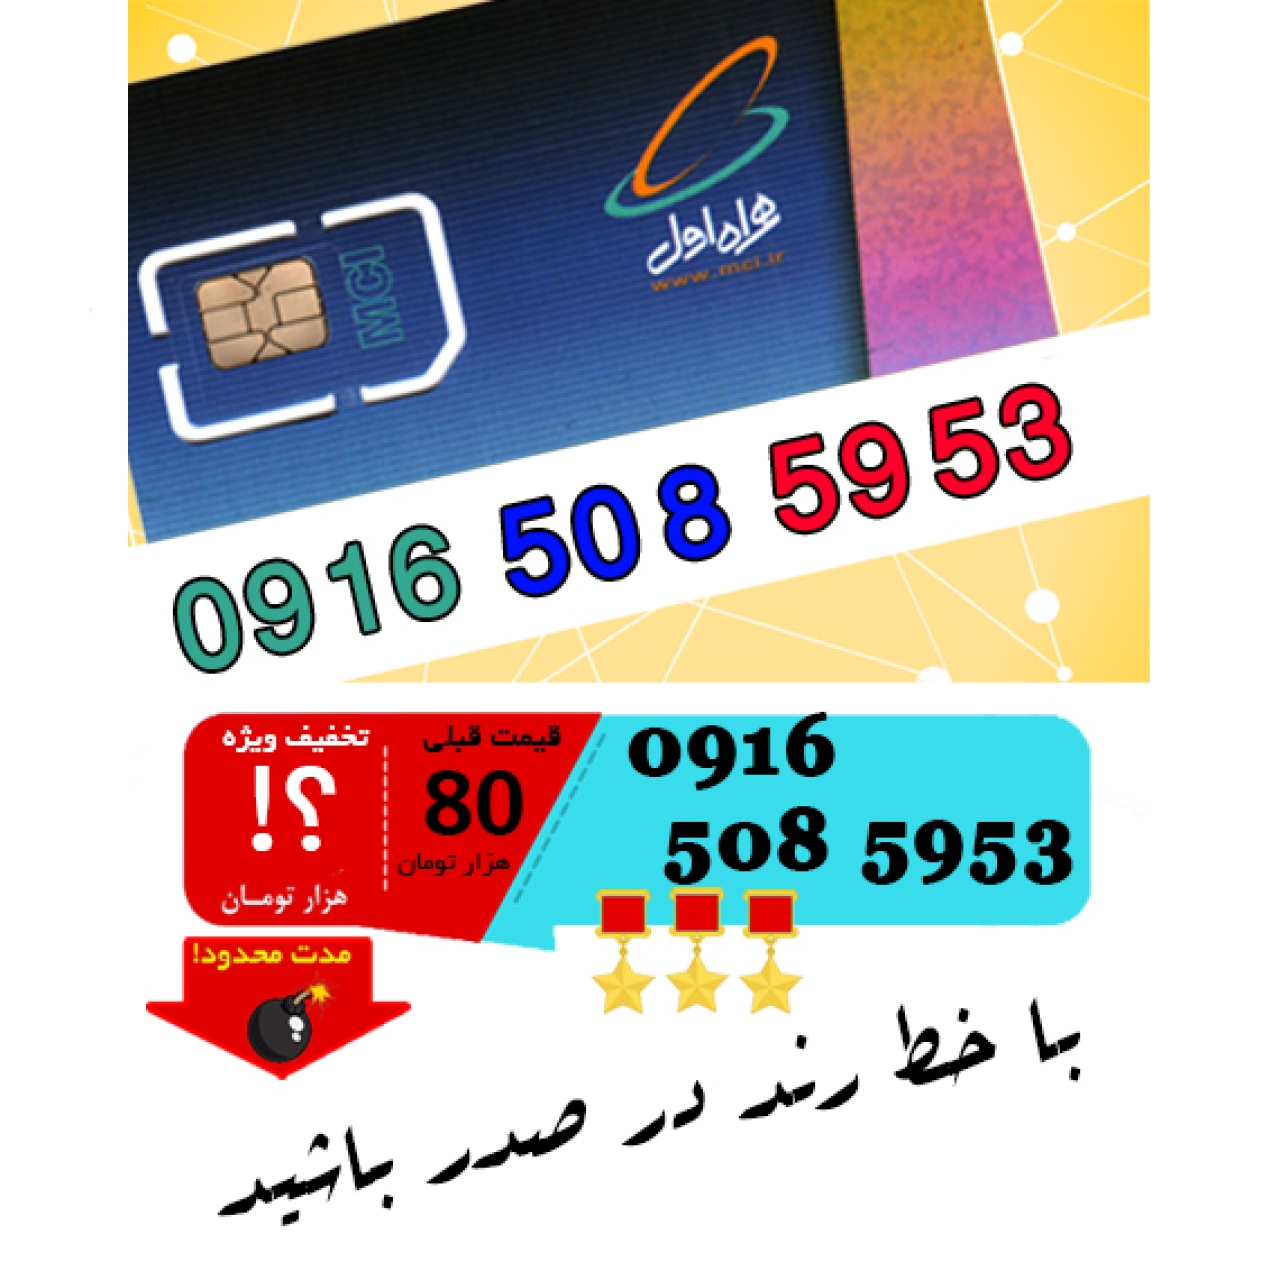 سیم کارت اعتباری رند همراه اول 09165085953